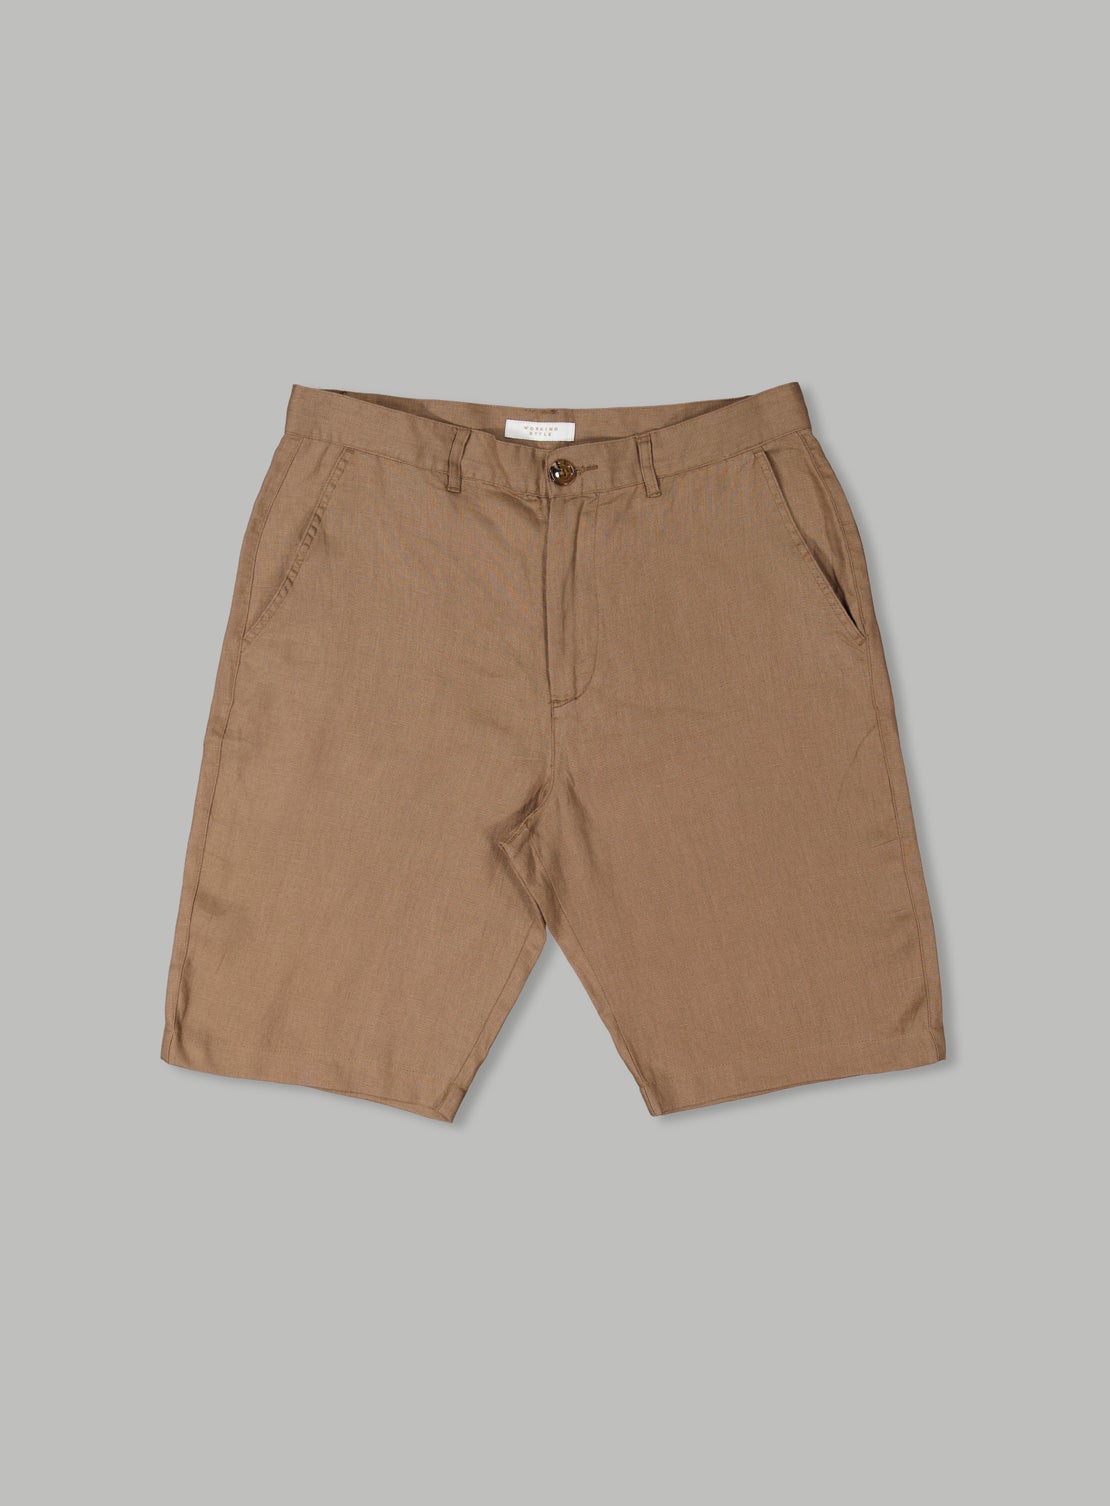 Brown Linen Short